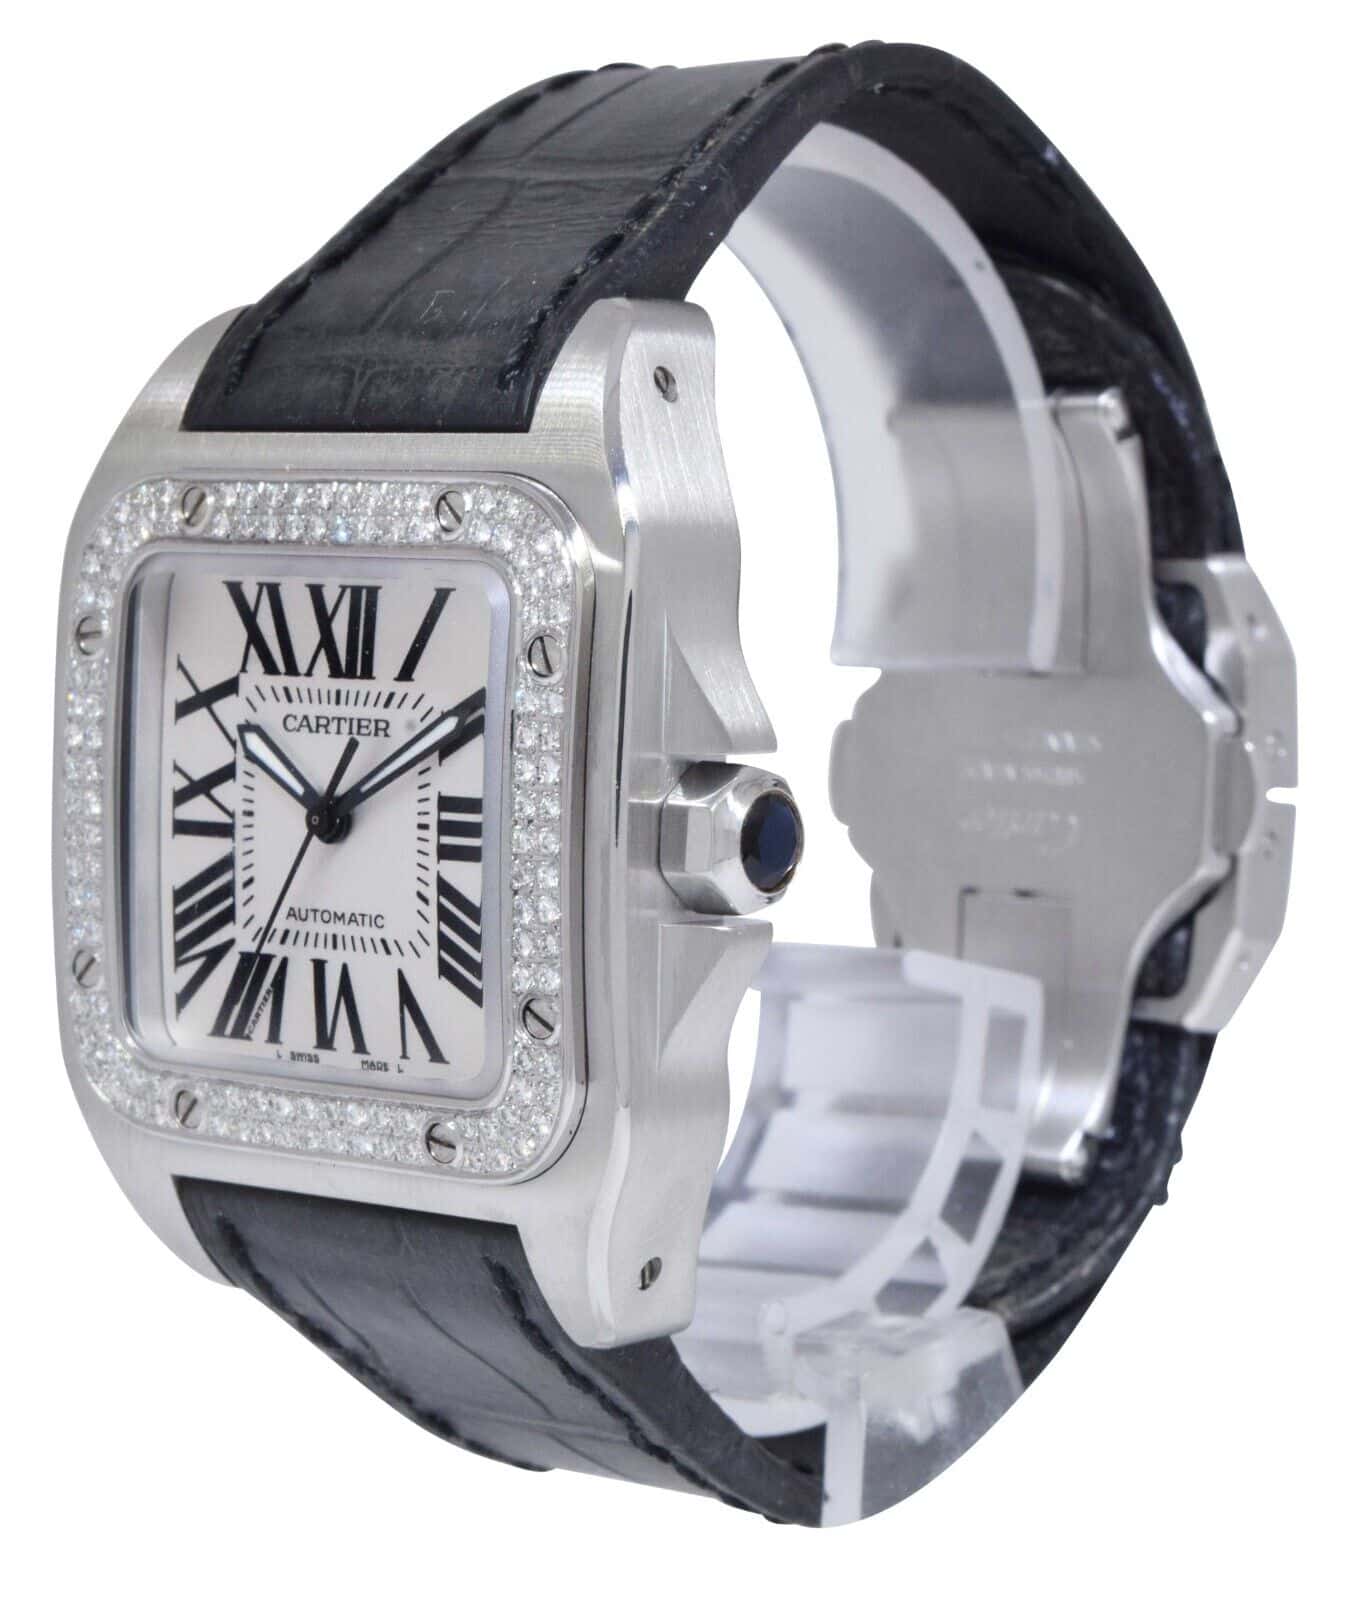 Cartier Santos 100 Steel Diamond Bezel Midsize Automatic Watch W20126x8 2878